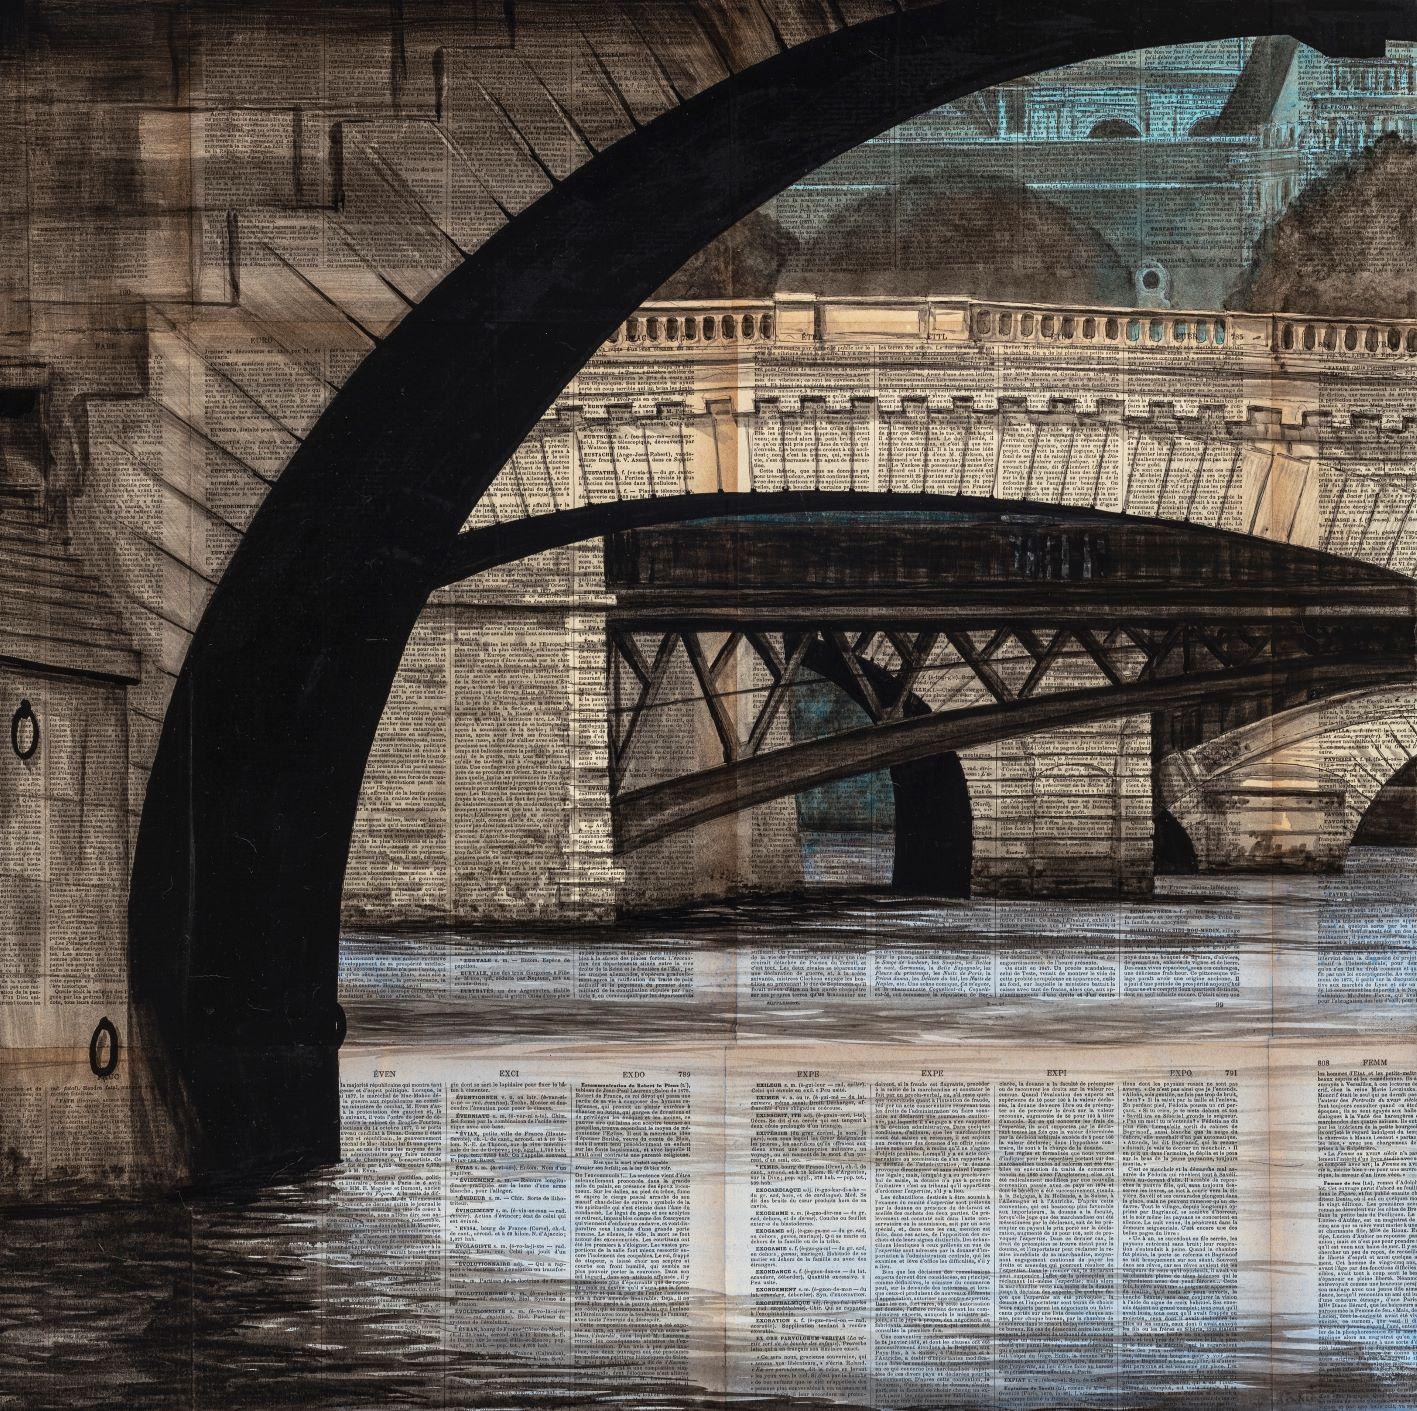 Arches by Guillaume Chansarel - Urban Landscape painting, Bridges of Paris